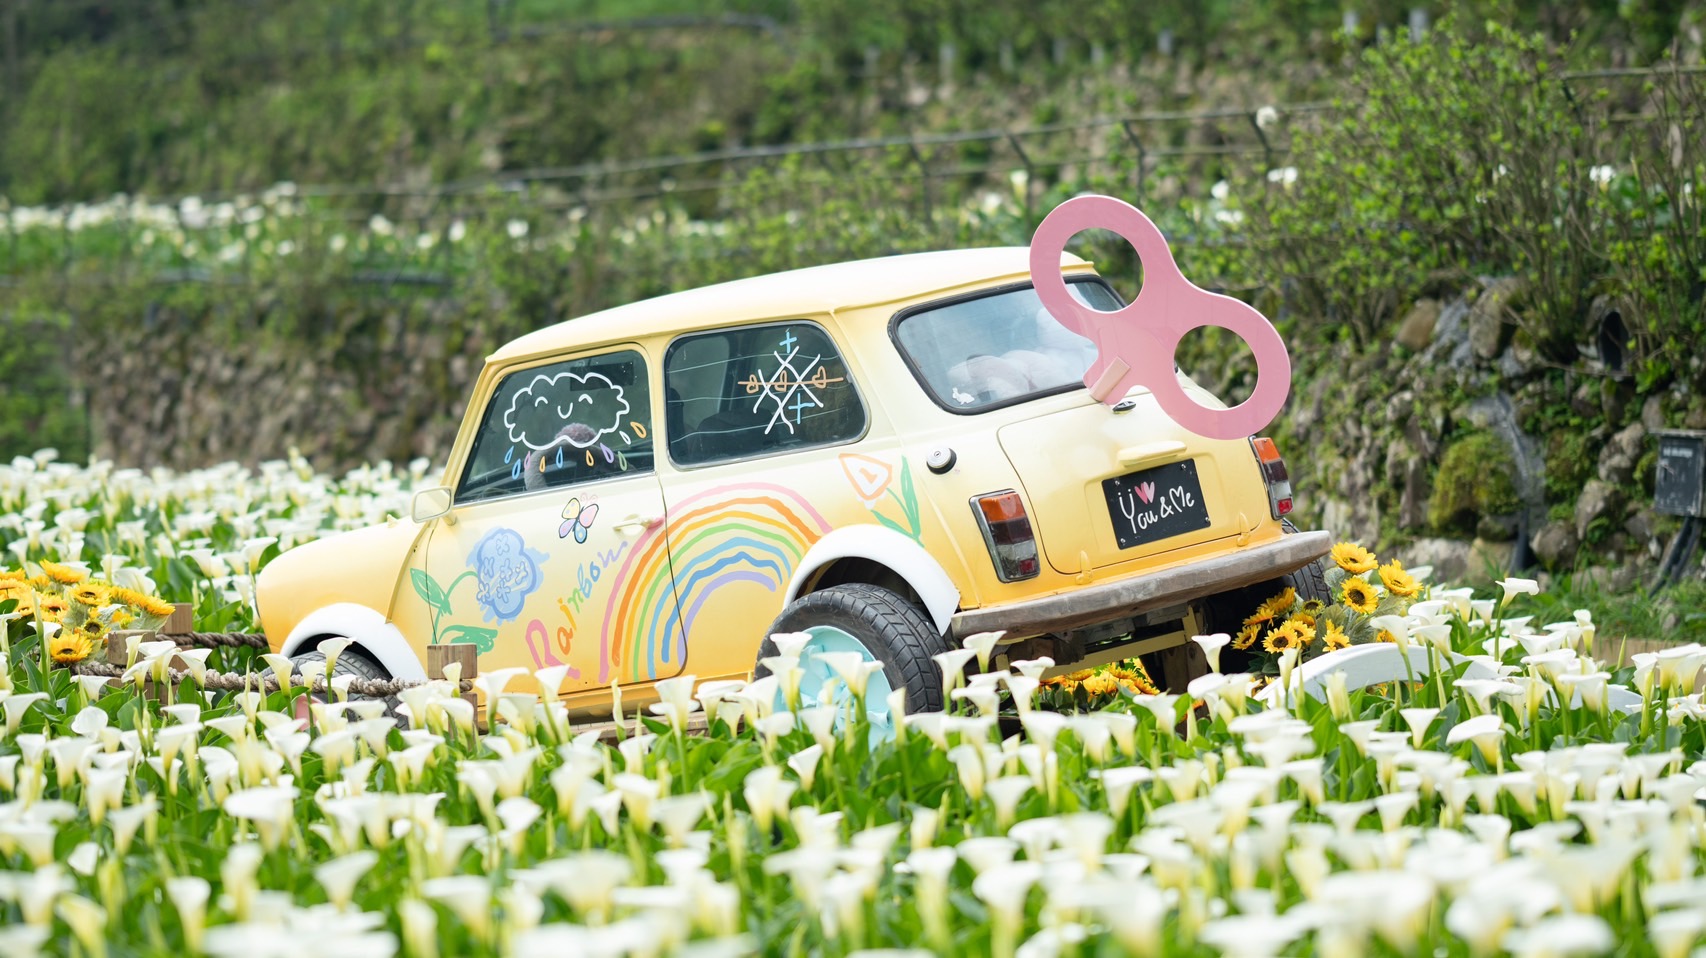  全臺唯一最大的純白海芋田 超夯網紅景點「發條玩具車」 